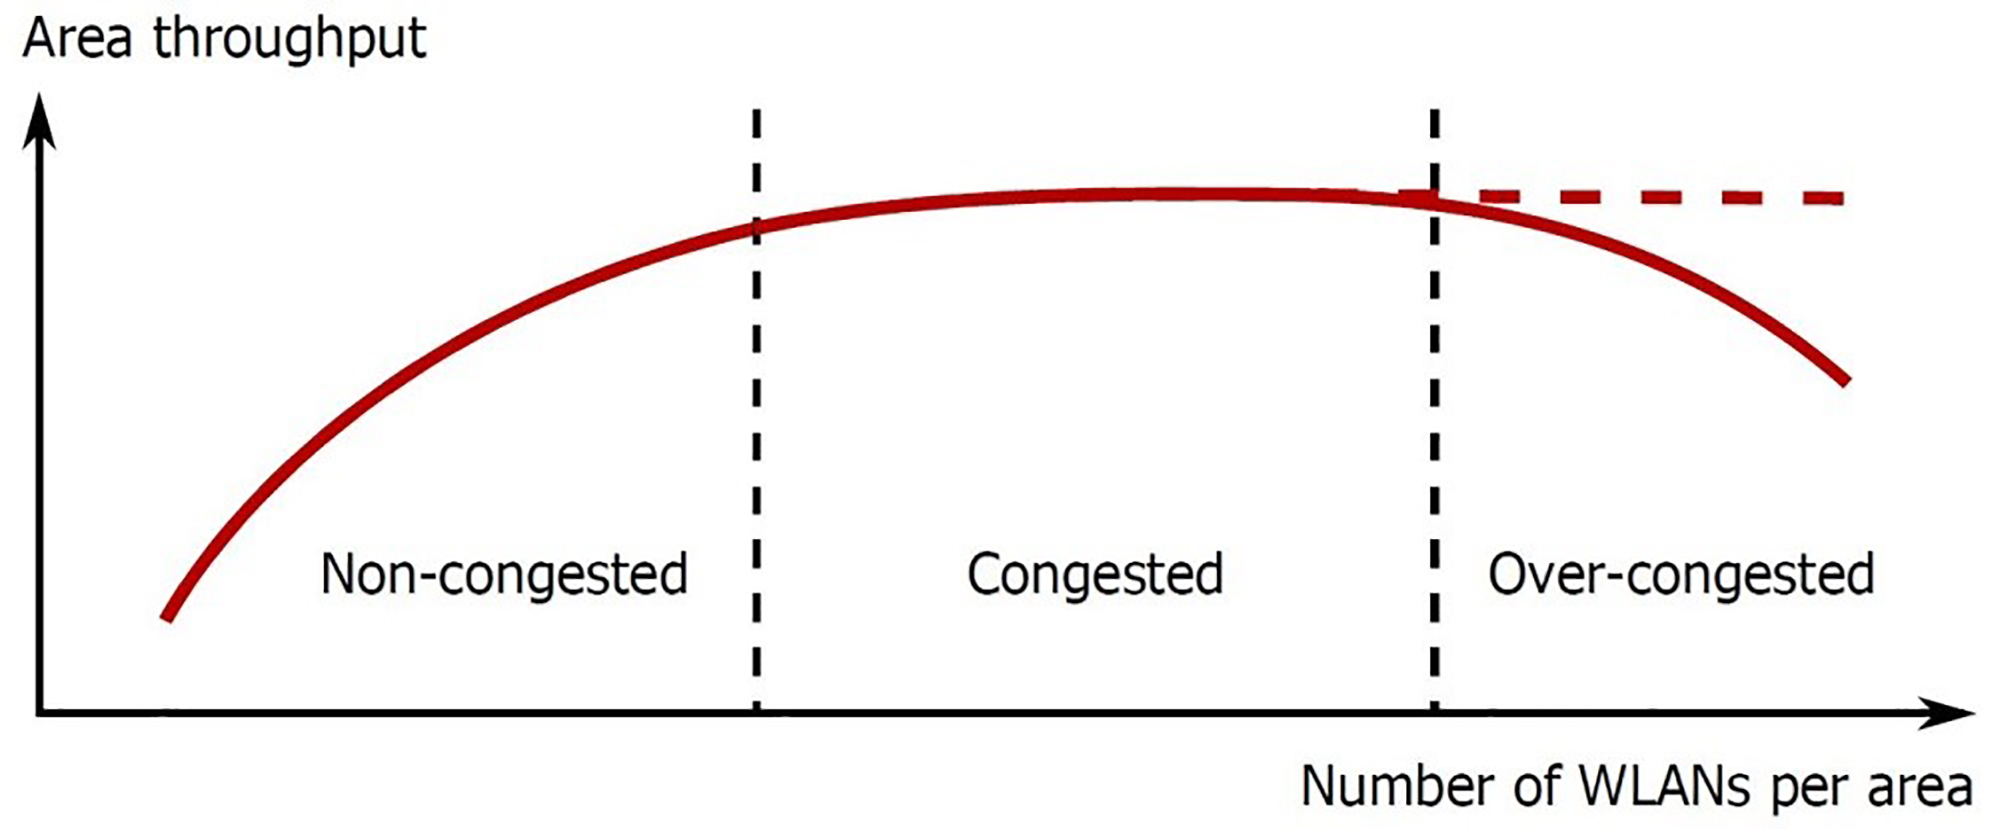 Figure 2. Area throughput versus WLANs per area